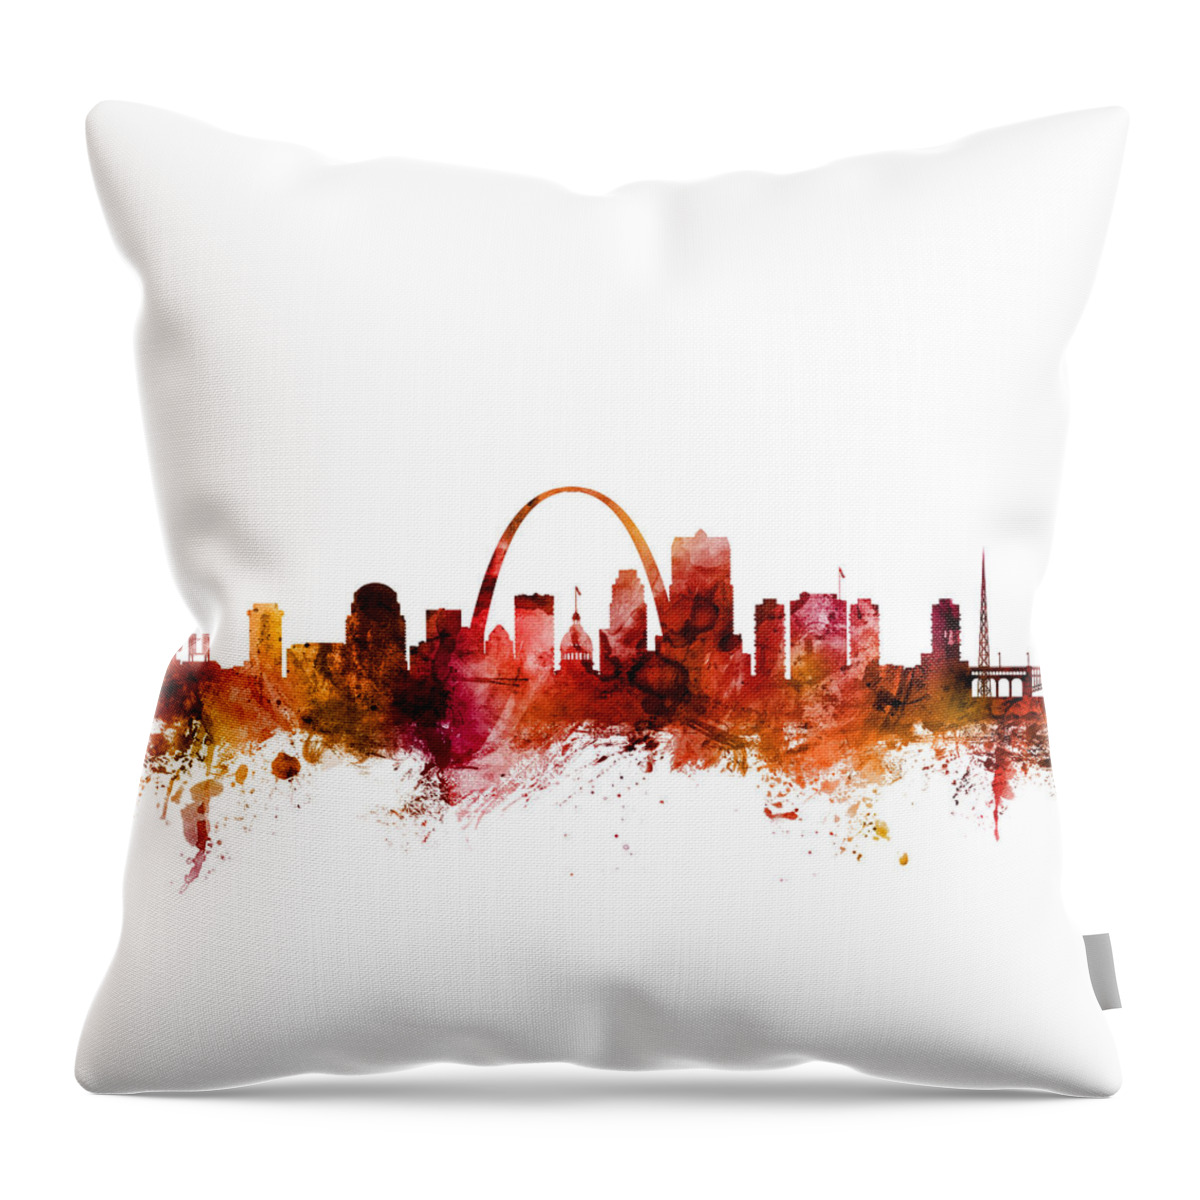 St Louis Throw Pillow featuring the digital art St Louis Missouri Skyline by Michael Tompsett